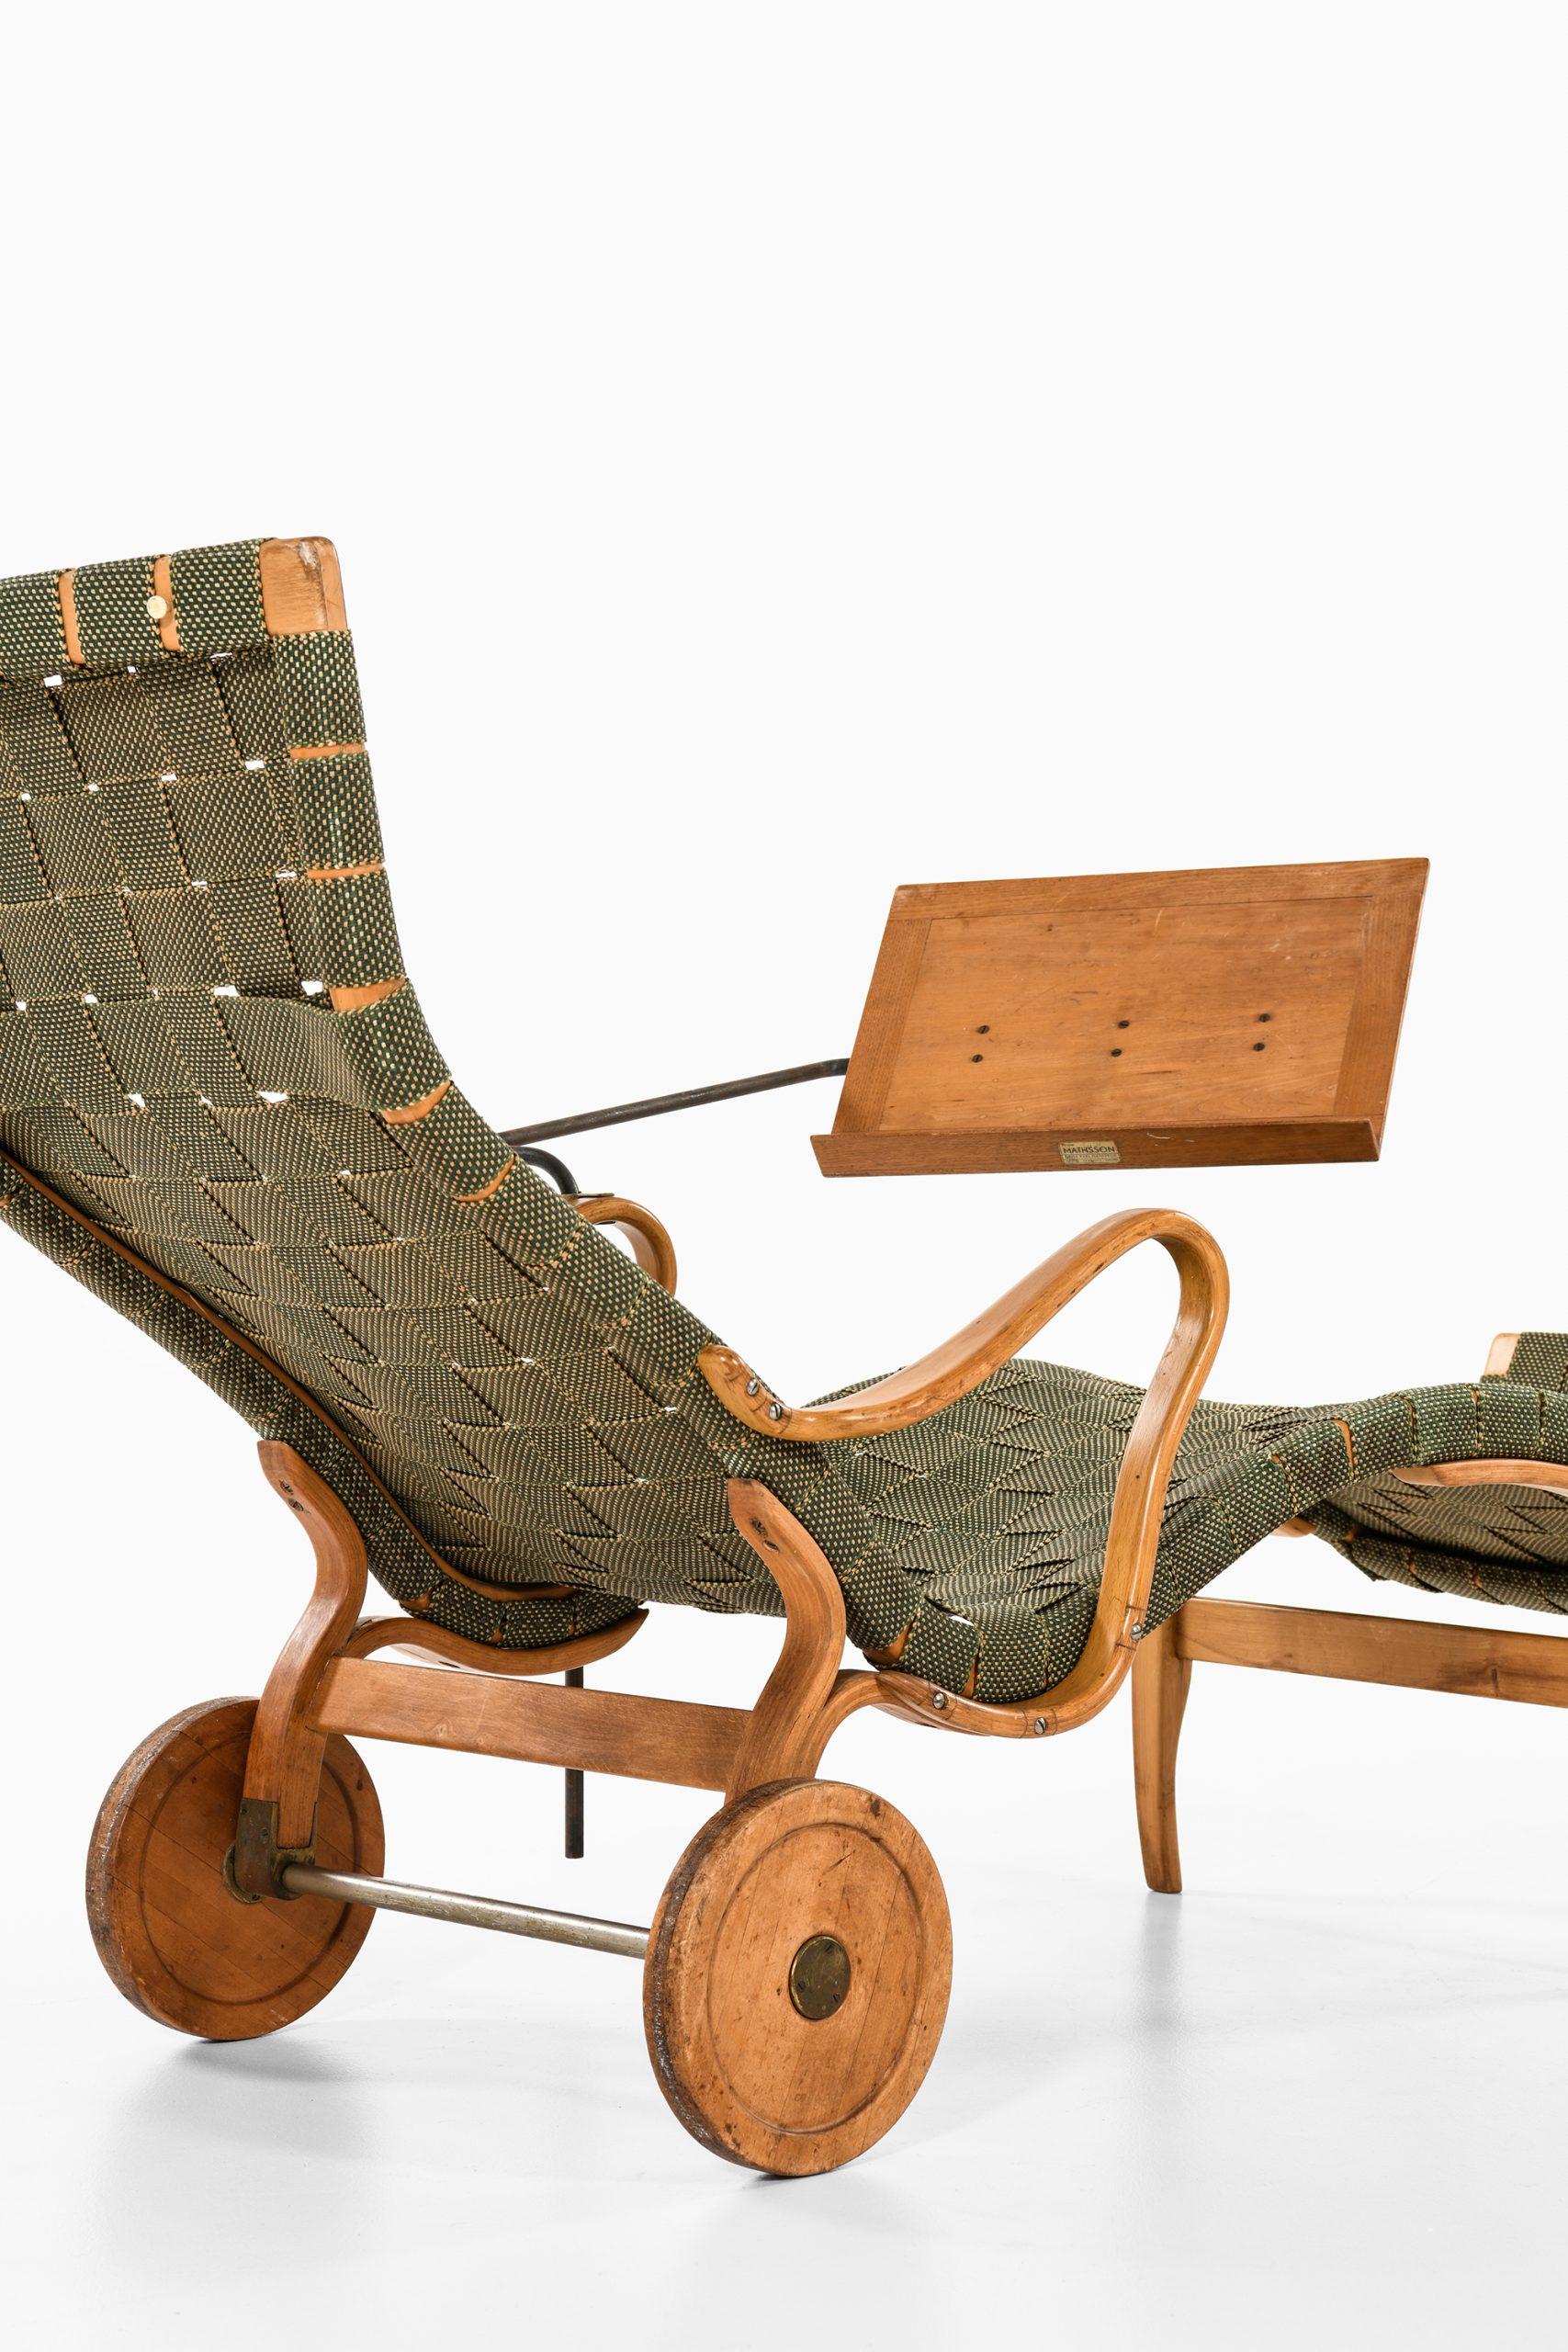 Bruno Mathsson Lounge Chair Model Pernilla Produced by Karl Mathsson in Värnamo 3